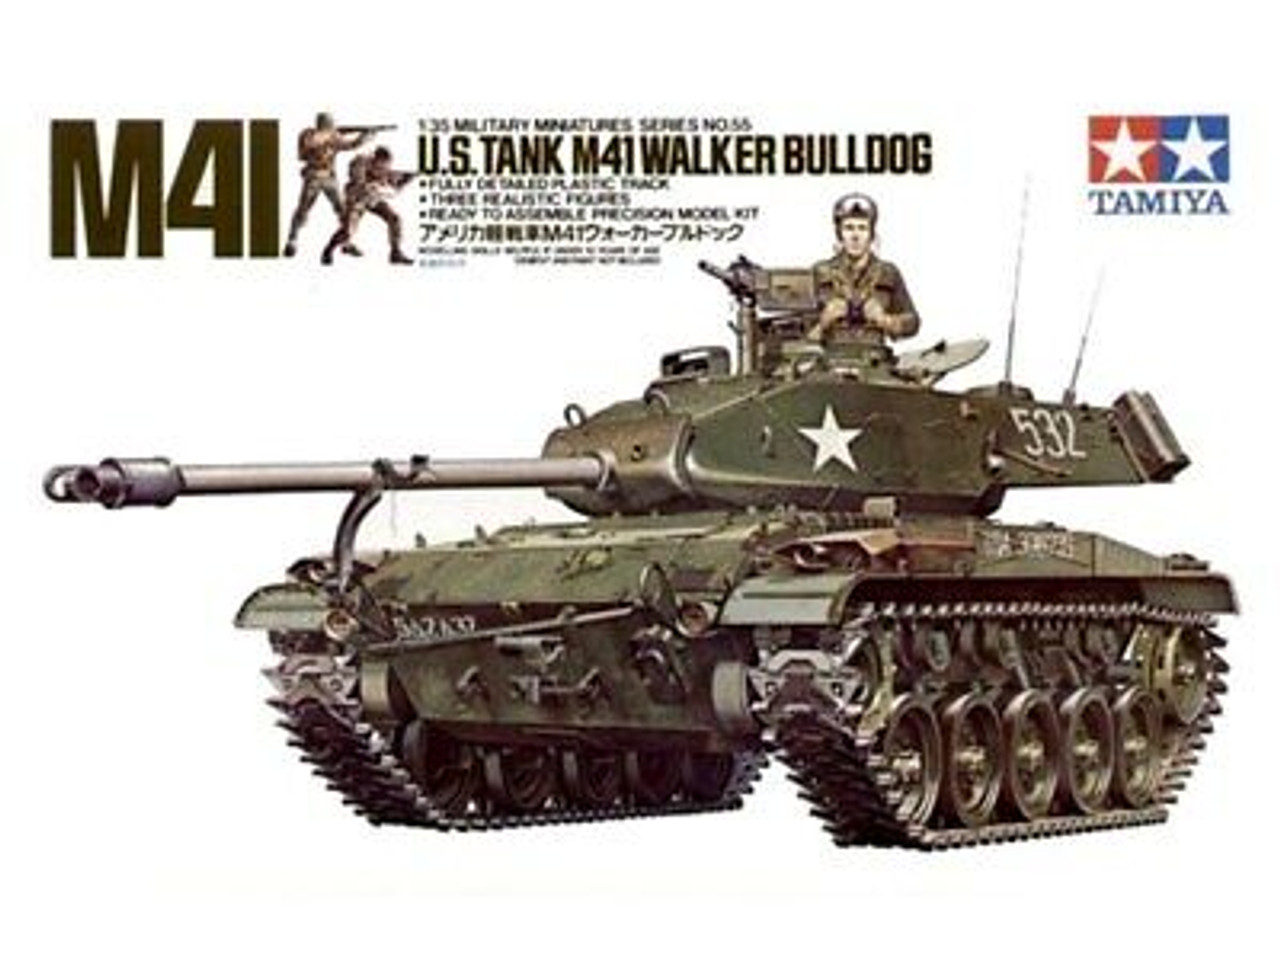 Tamiya 35055 1/35 U.S. M41 Walker Bulldog Model Kit Box